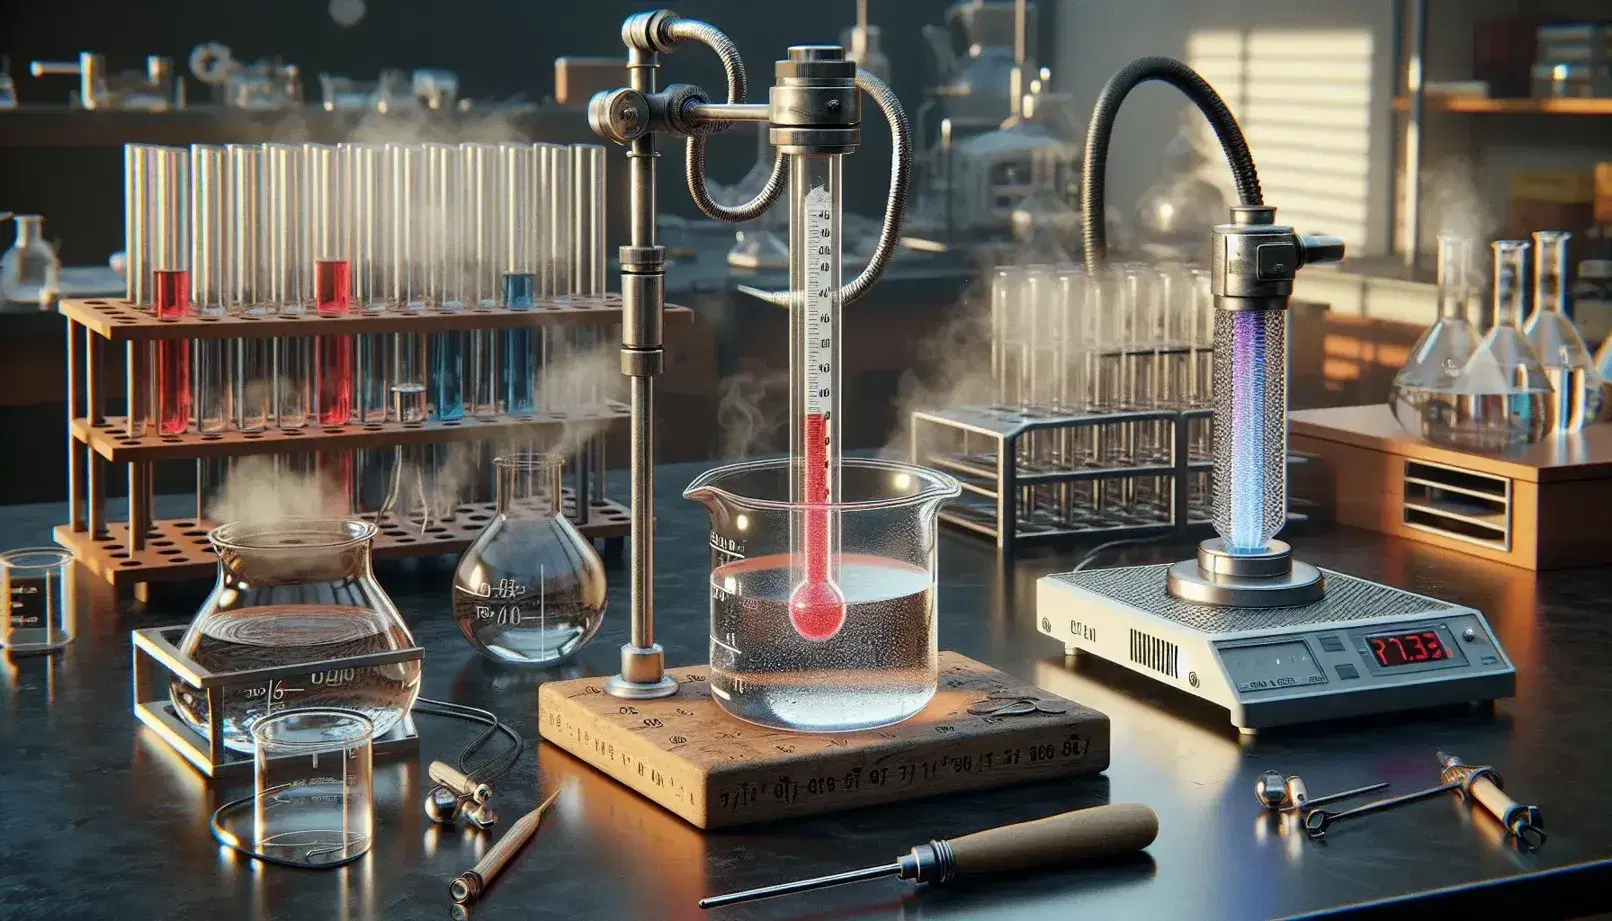 Laboratorio científico con termómetro en beaker de agua, bloque metálico con varilla dilatada, calentador eléctrico y tubos de ensayo con líquidos coloridos.